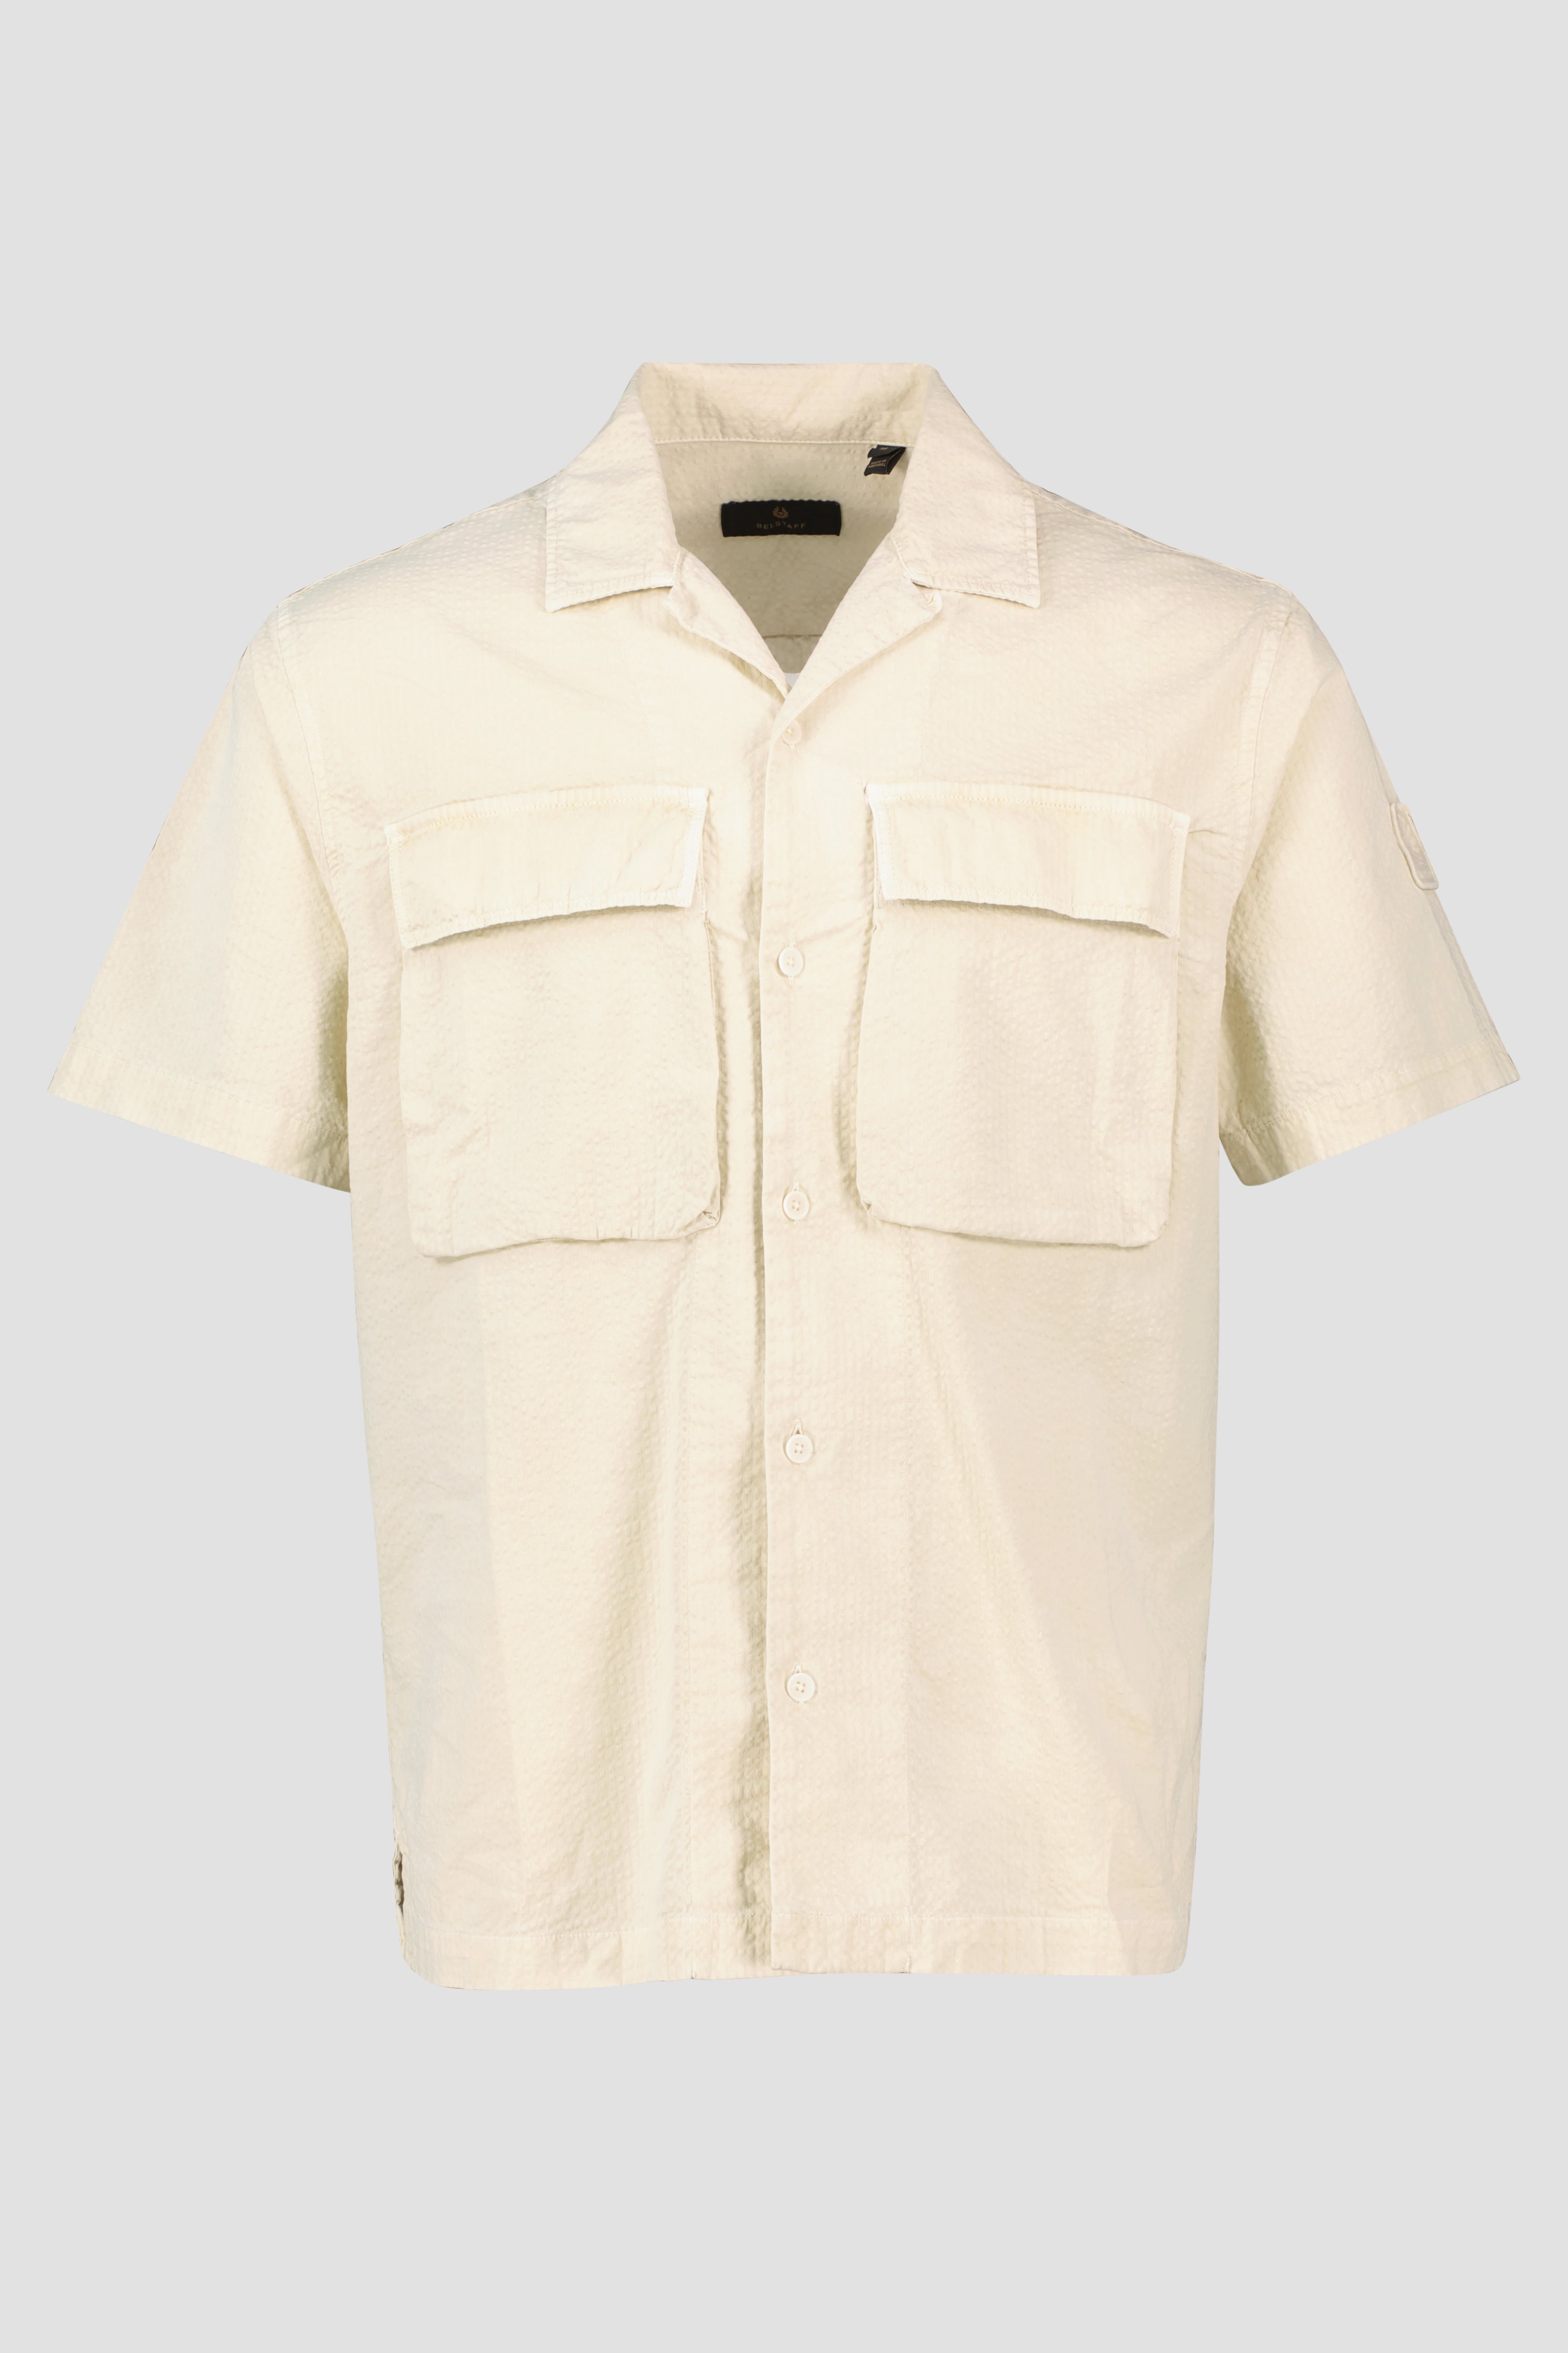 Men's Belstaff Shell Mineral Caster Short Sleeve Shirt